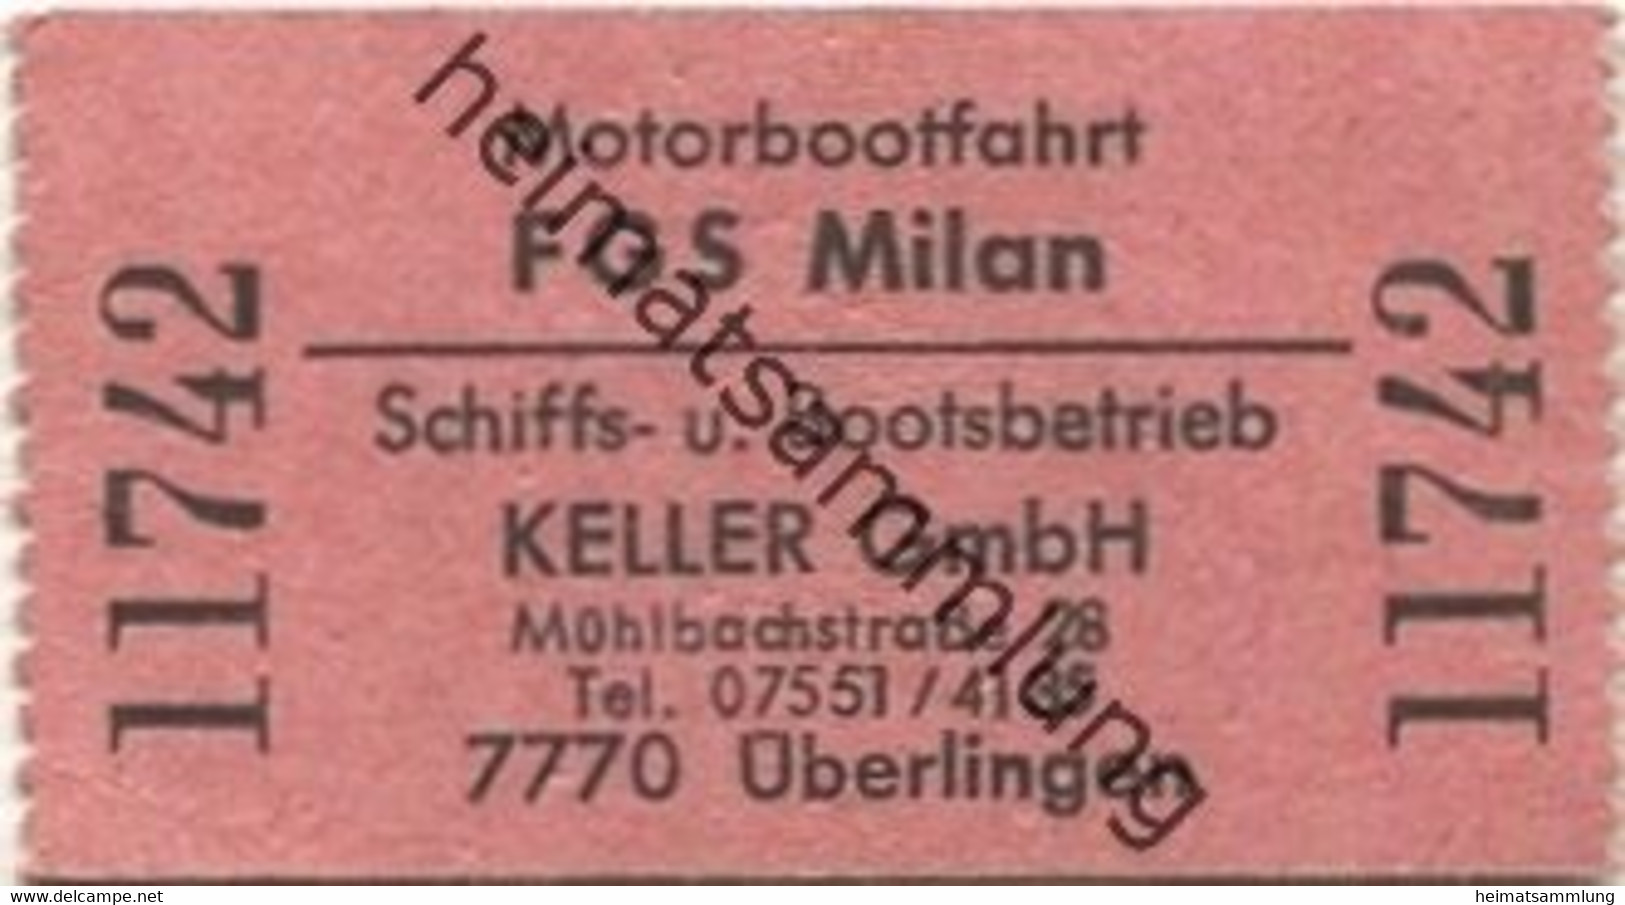 Deutschland - Motorbootfahrt - FGS Milan - Schiffs- Und Bootsbetrieb Keller GmbH Überlingen - Fahrschein - Europe